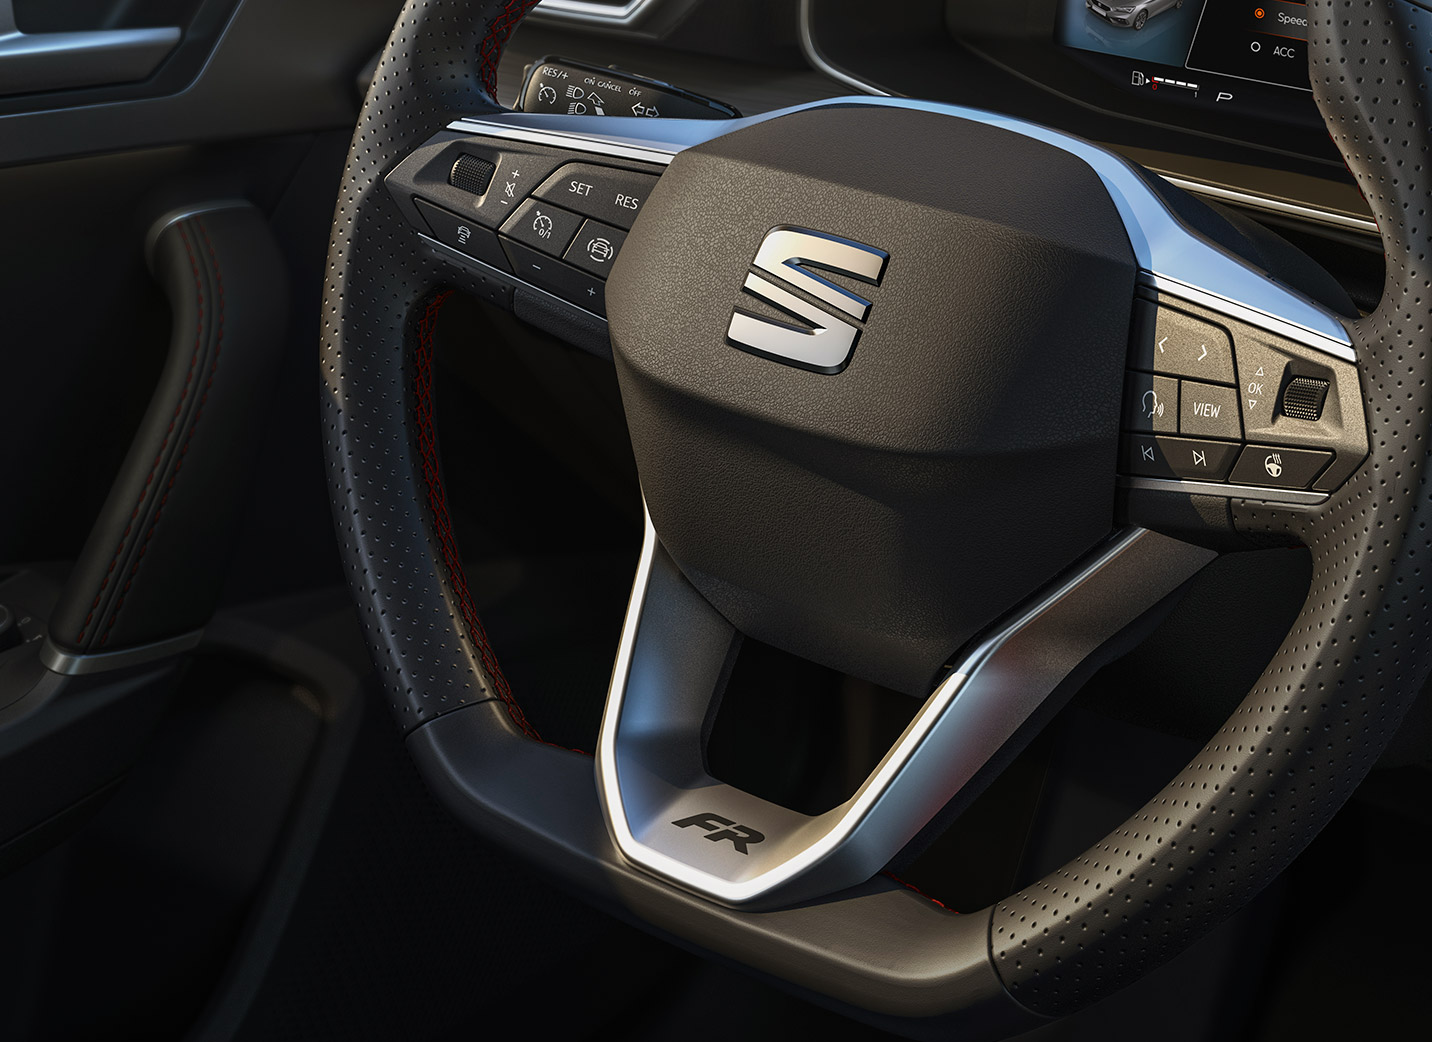 Nuevo SEAT León con multifunción con control por voz